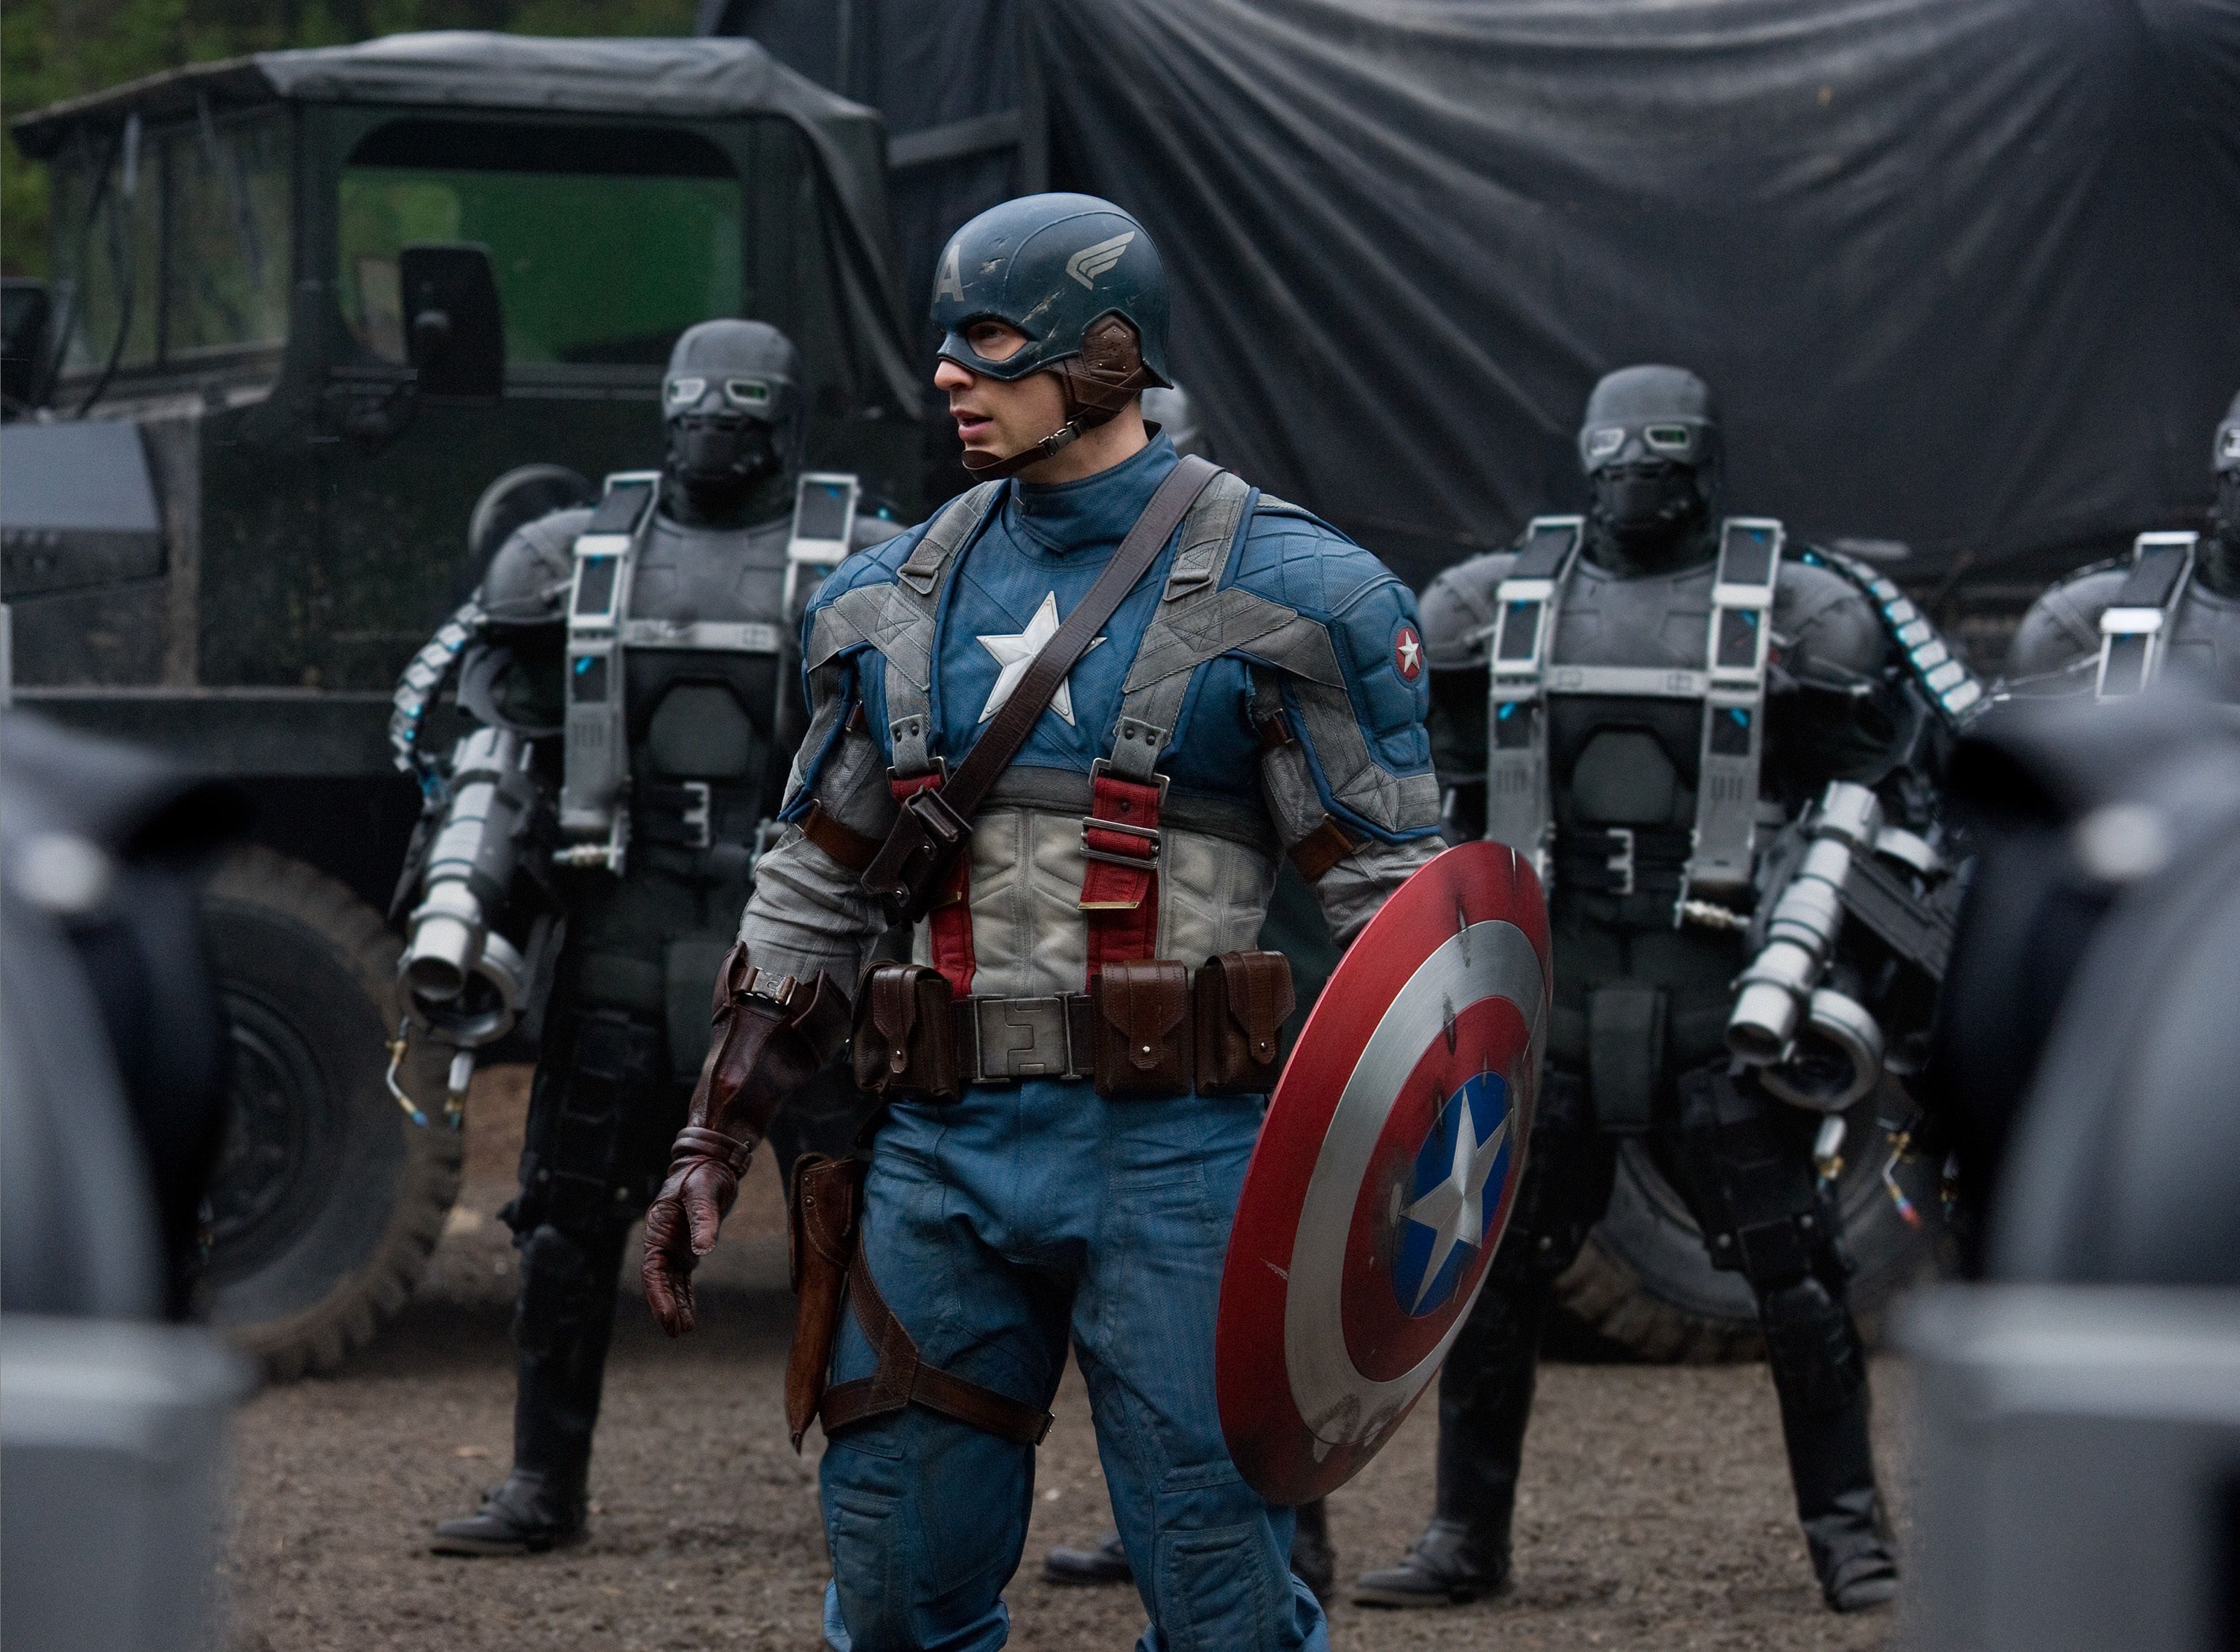 Steve Rogers Captain America